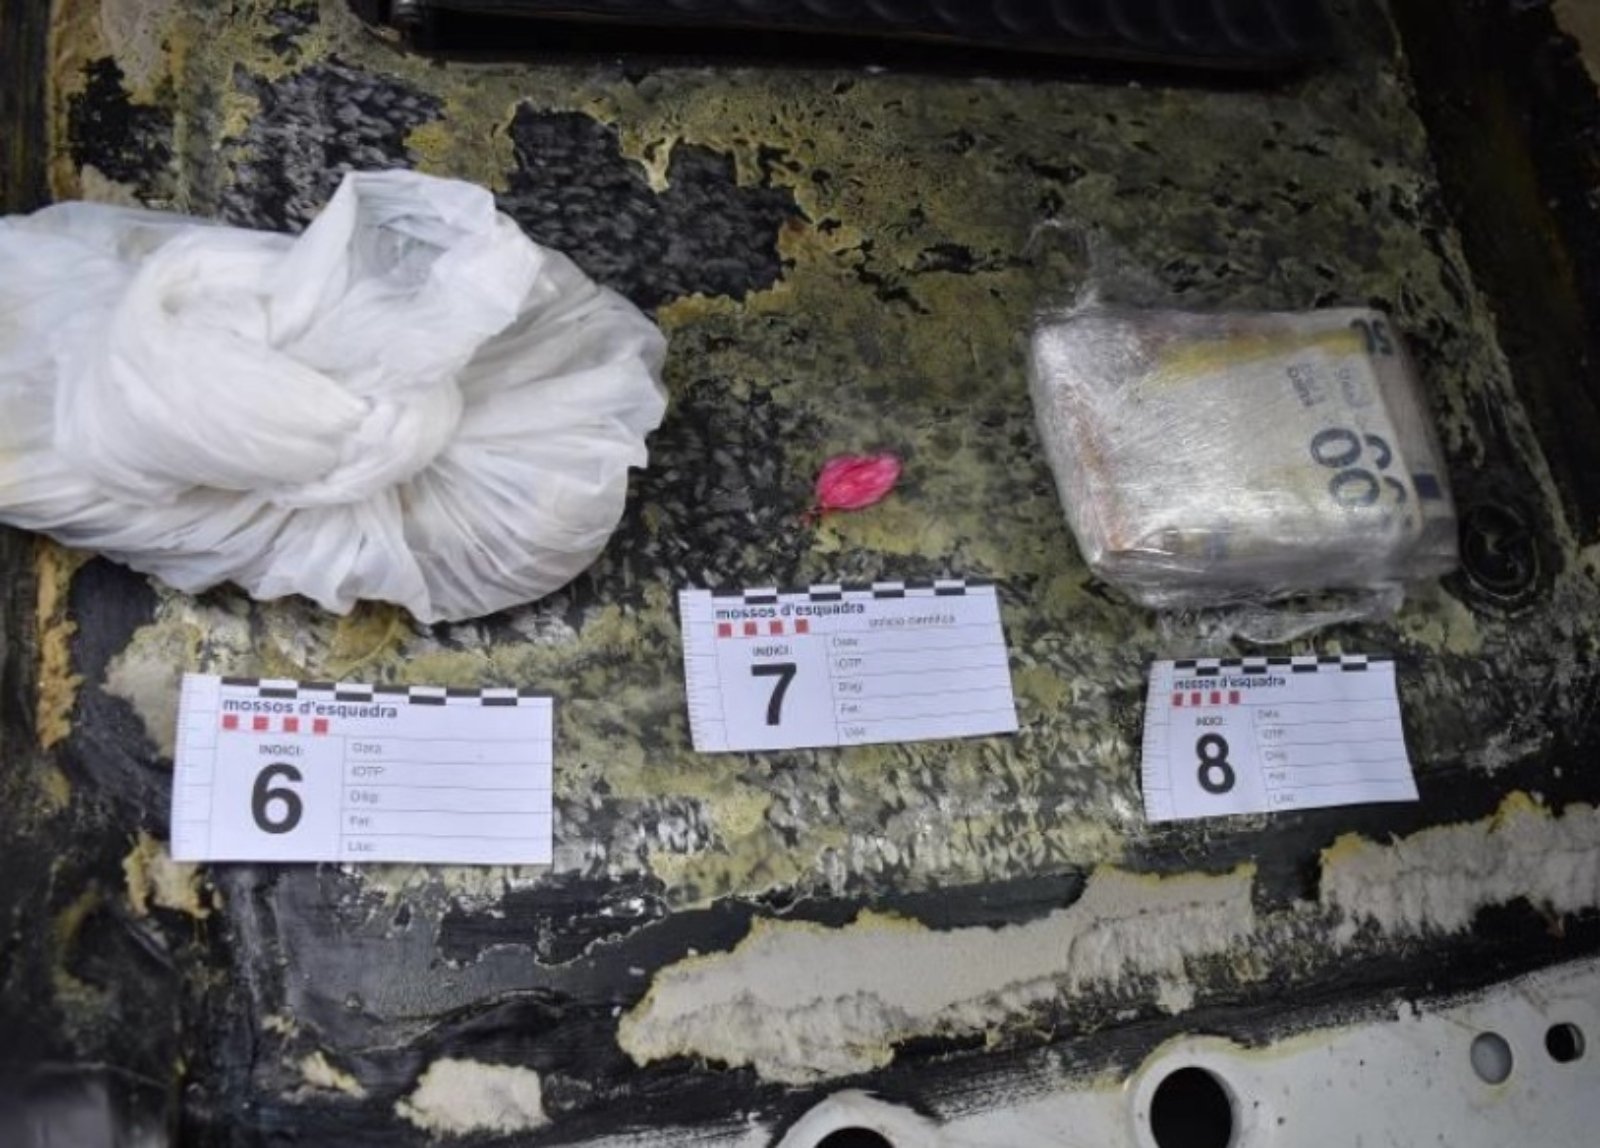 230214 NdP 019 RPP Los Mossos d'Esquadra intervienen un kilogramo de cocaína y 32.400 € en un vehículo en Lleida (1) (1)